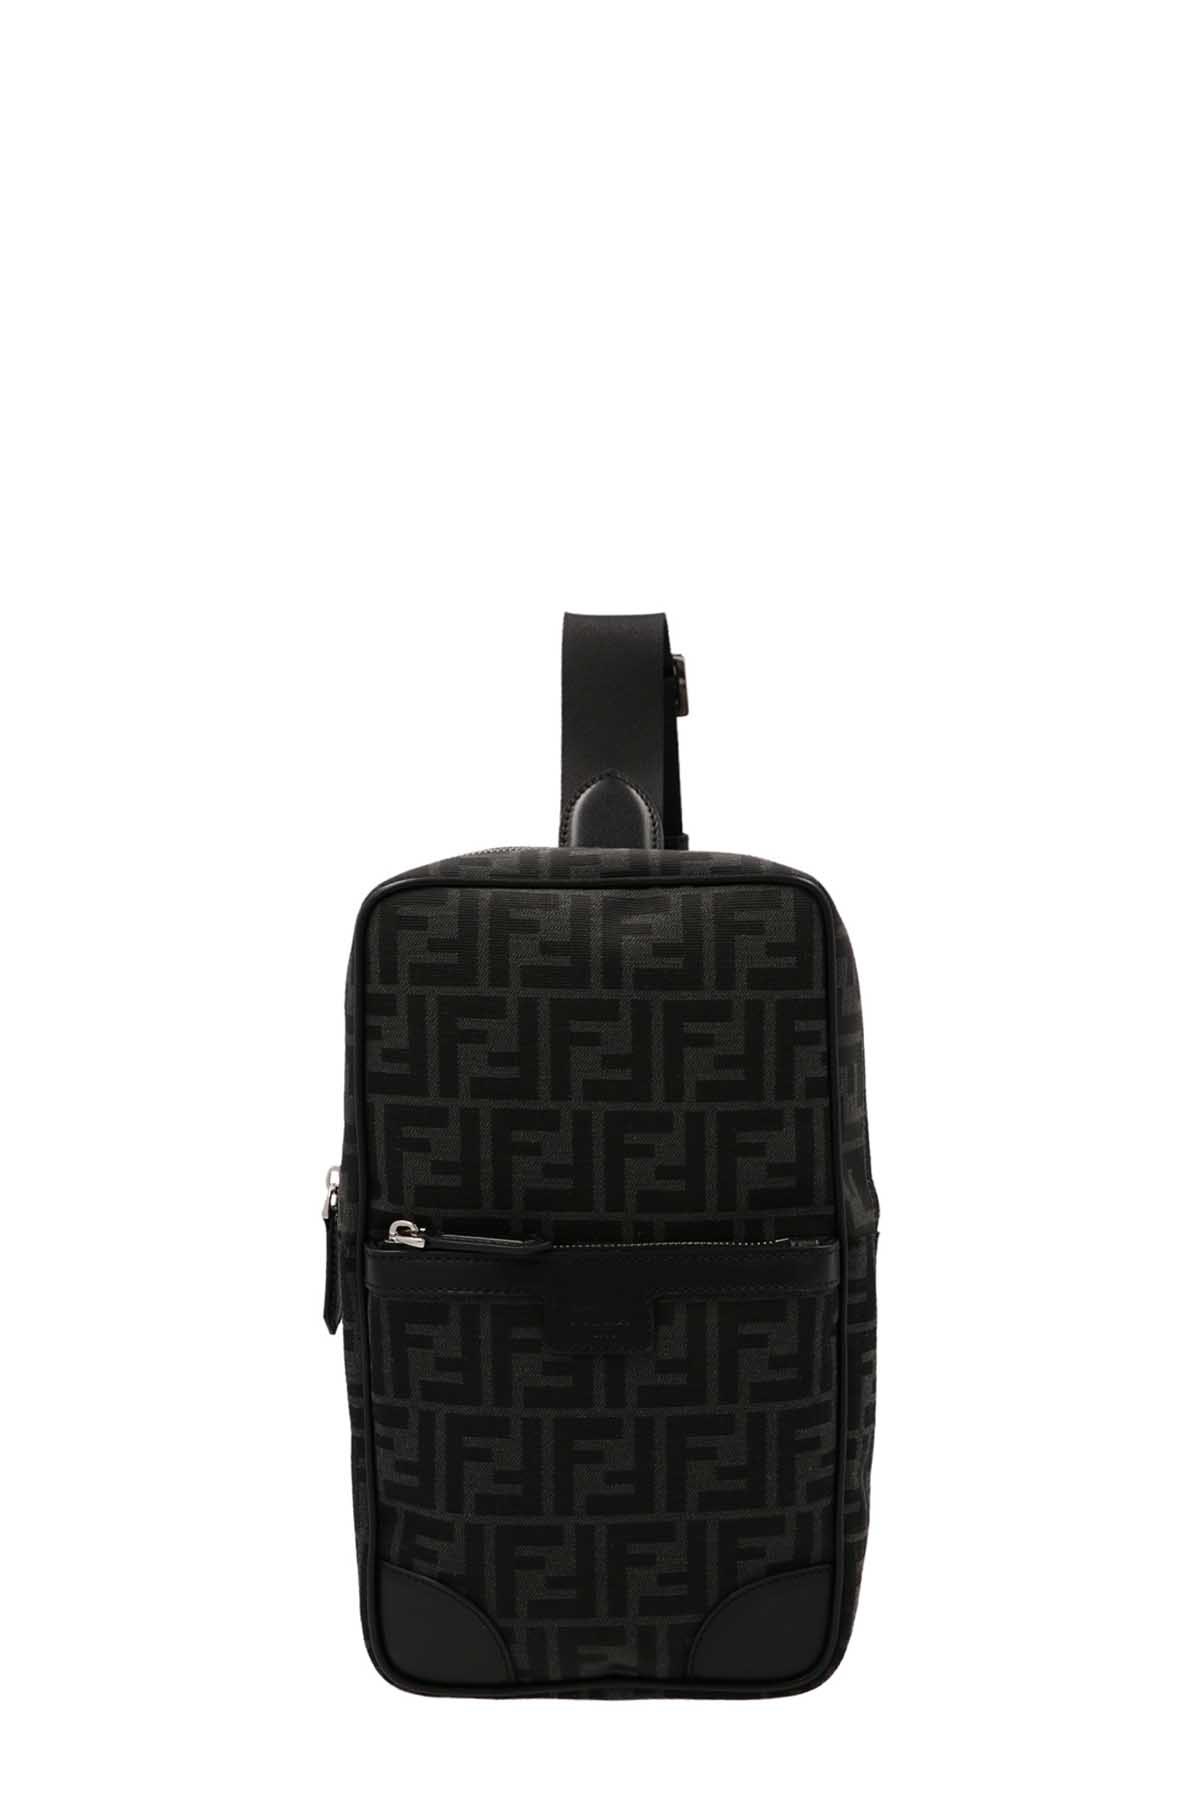 FENDI 'Travel' One-Shoulder Backpack